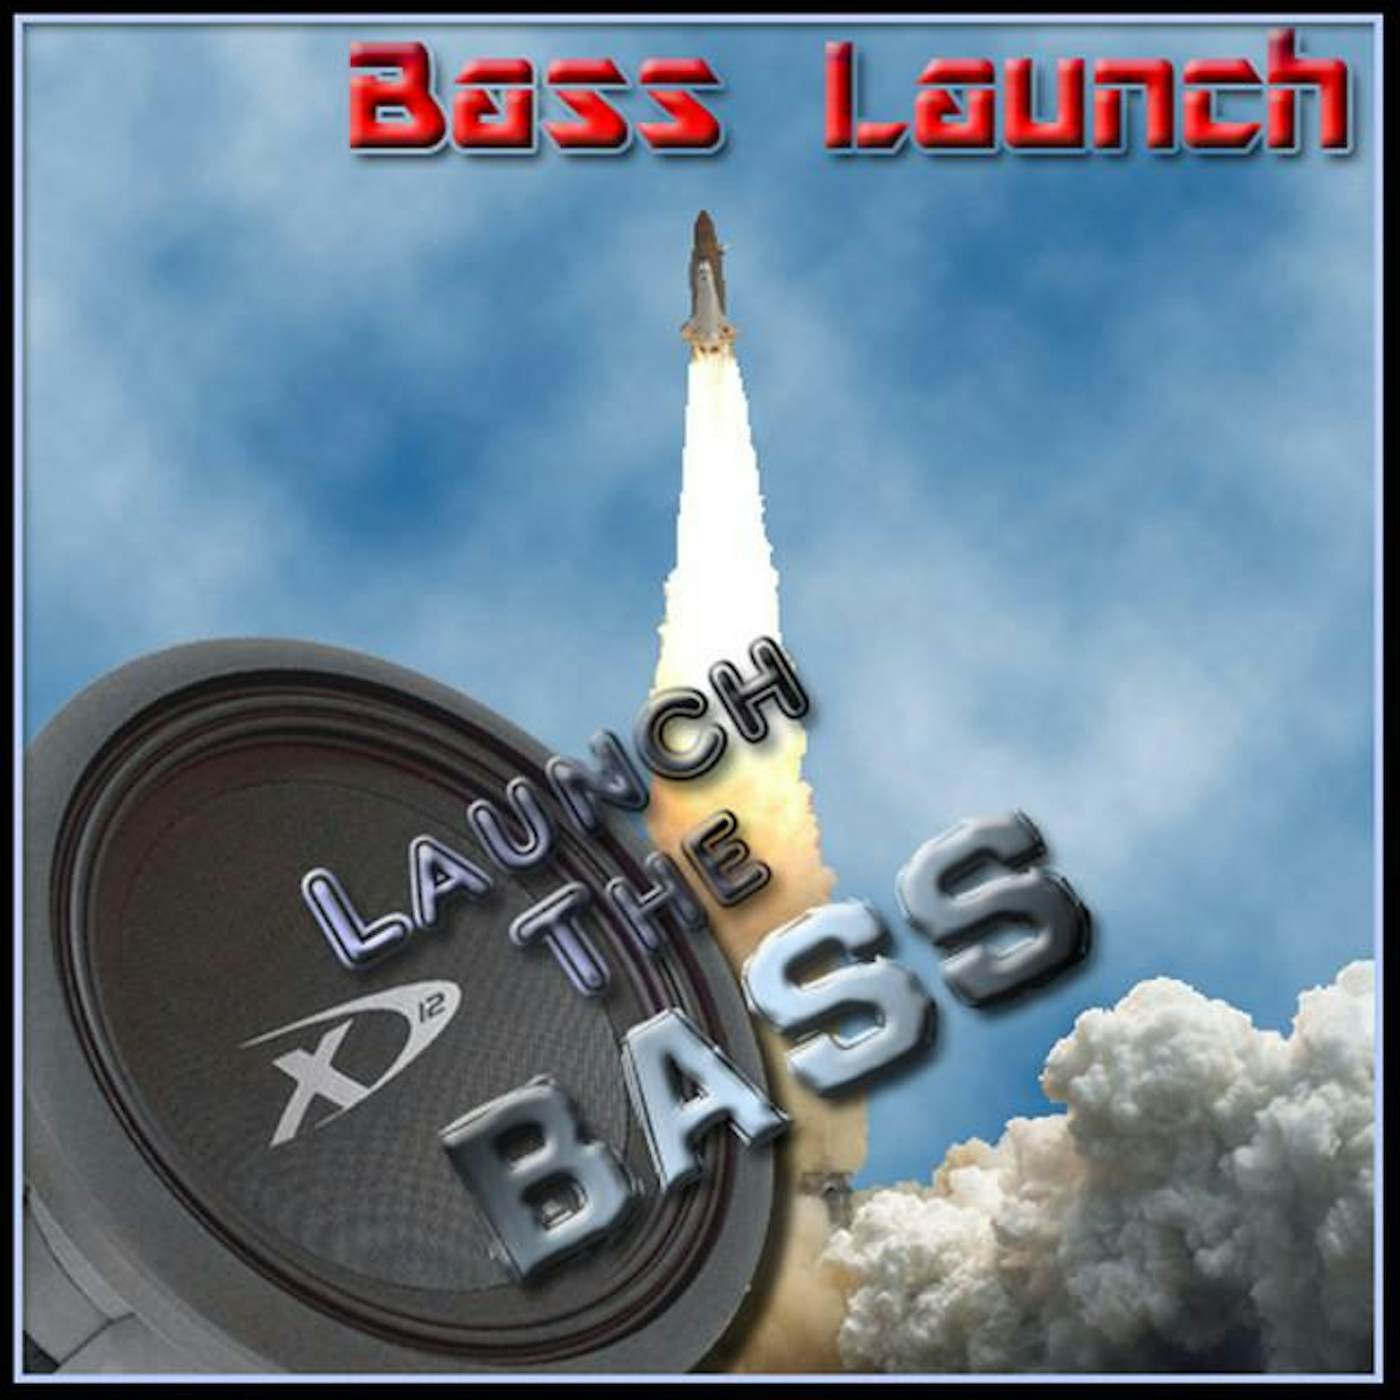 Bass Launch